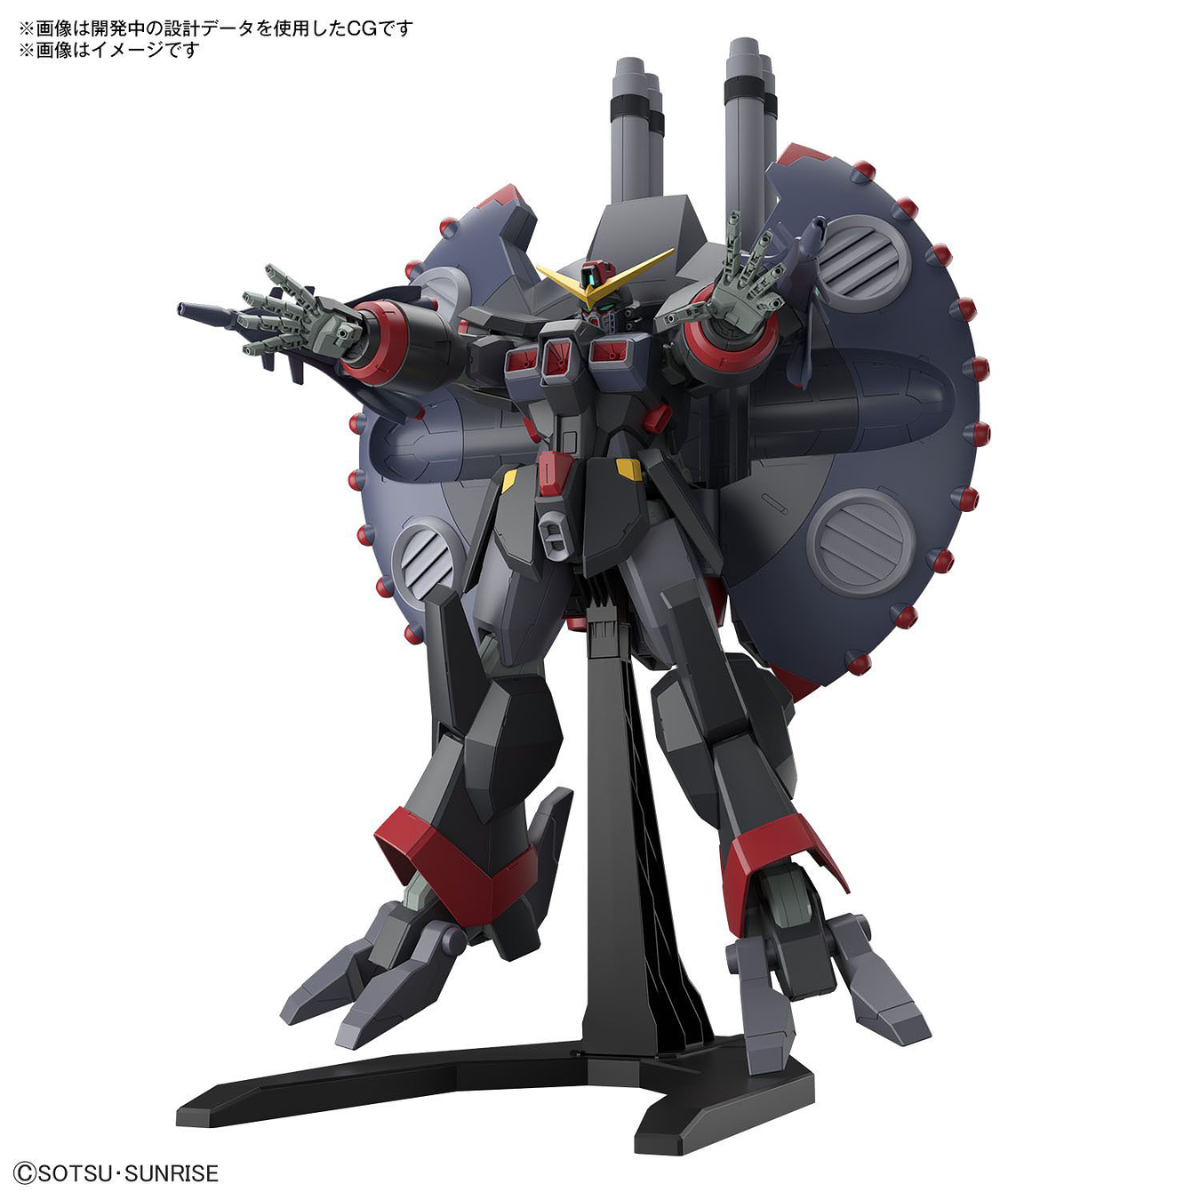 Gunpla HGCE 1/144 Destroy Gundam-Bandai-Ace Cards & Collectibles